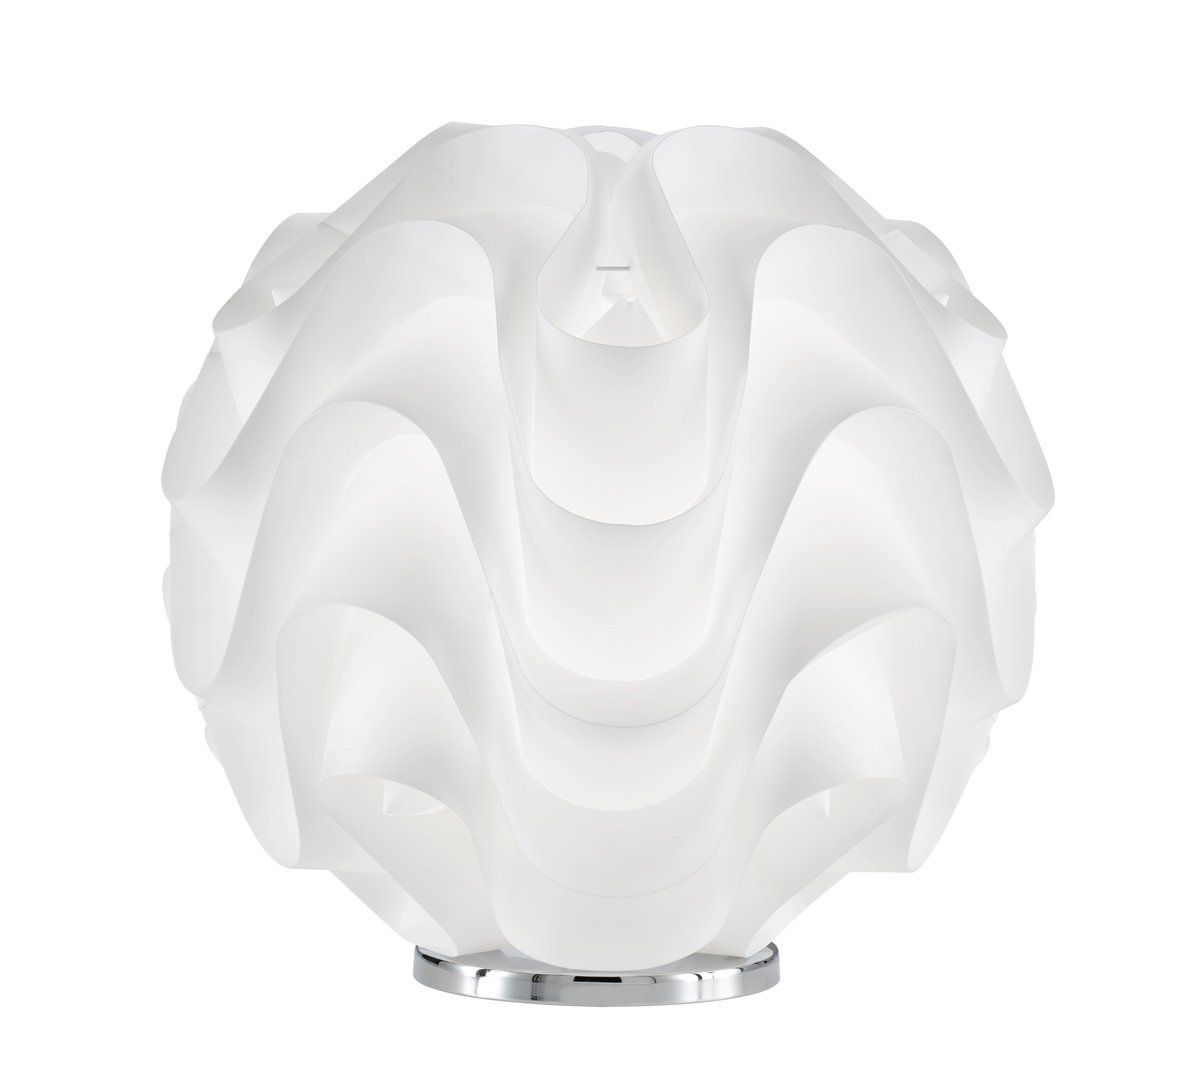 Lampe à poser design MAYA2 blanche en PVC et métal